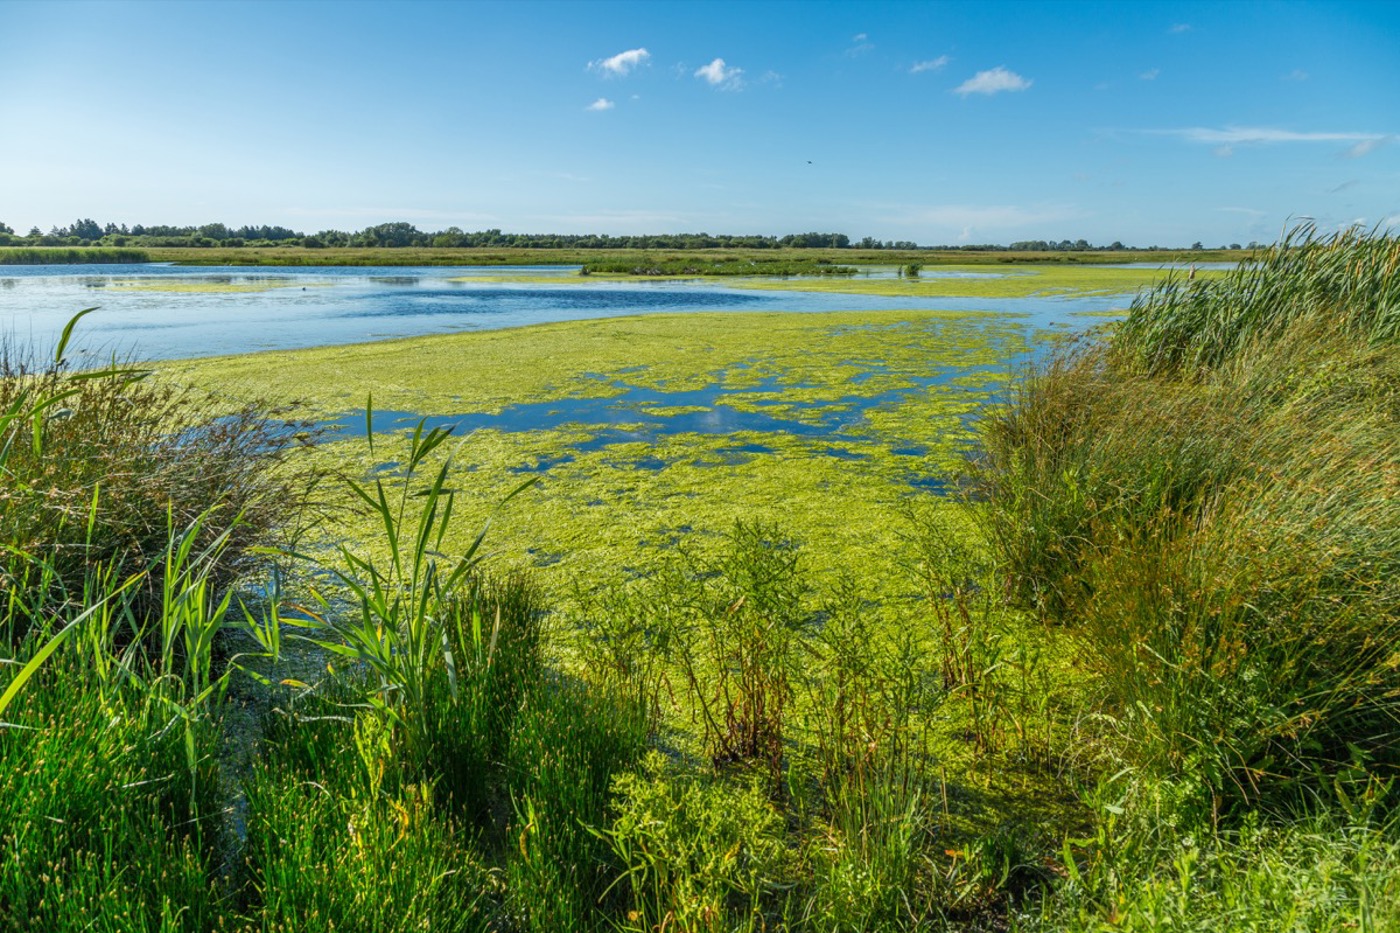 Mal überschwemmt, dann wieder trocken – die Sumpflandschaft der Baie de Somme ist voller Leben. © Benoît Bremer (alle Fotos)